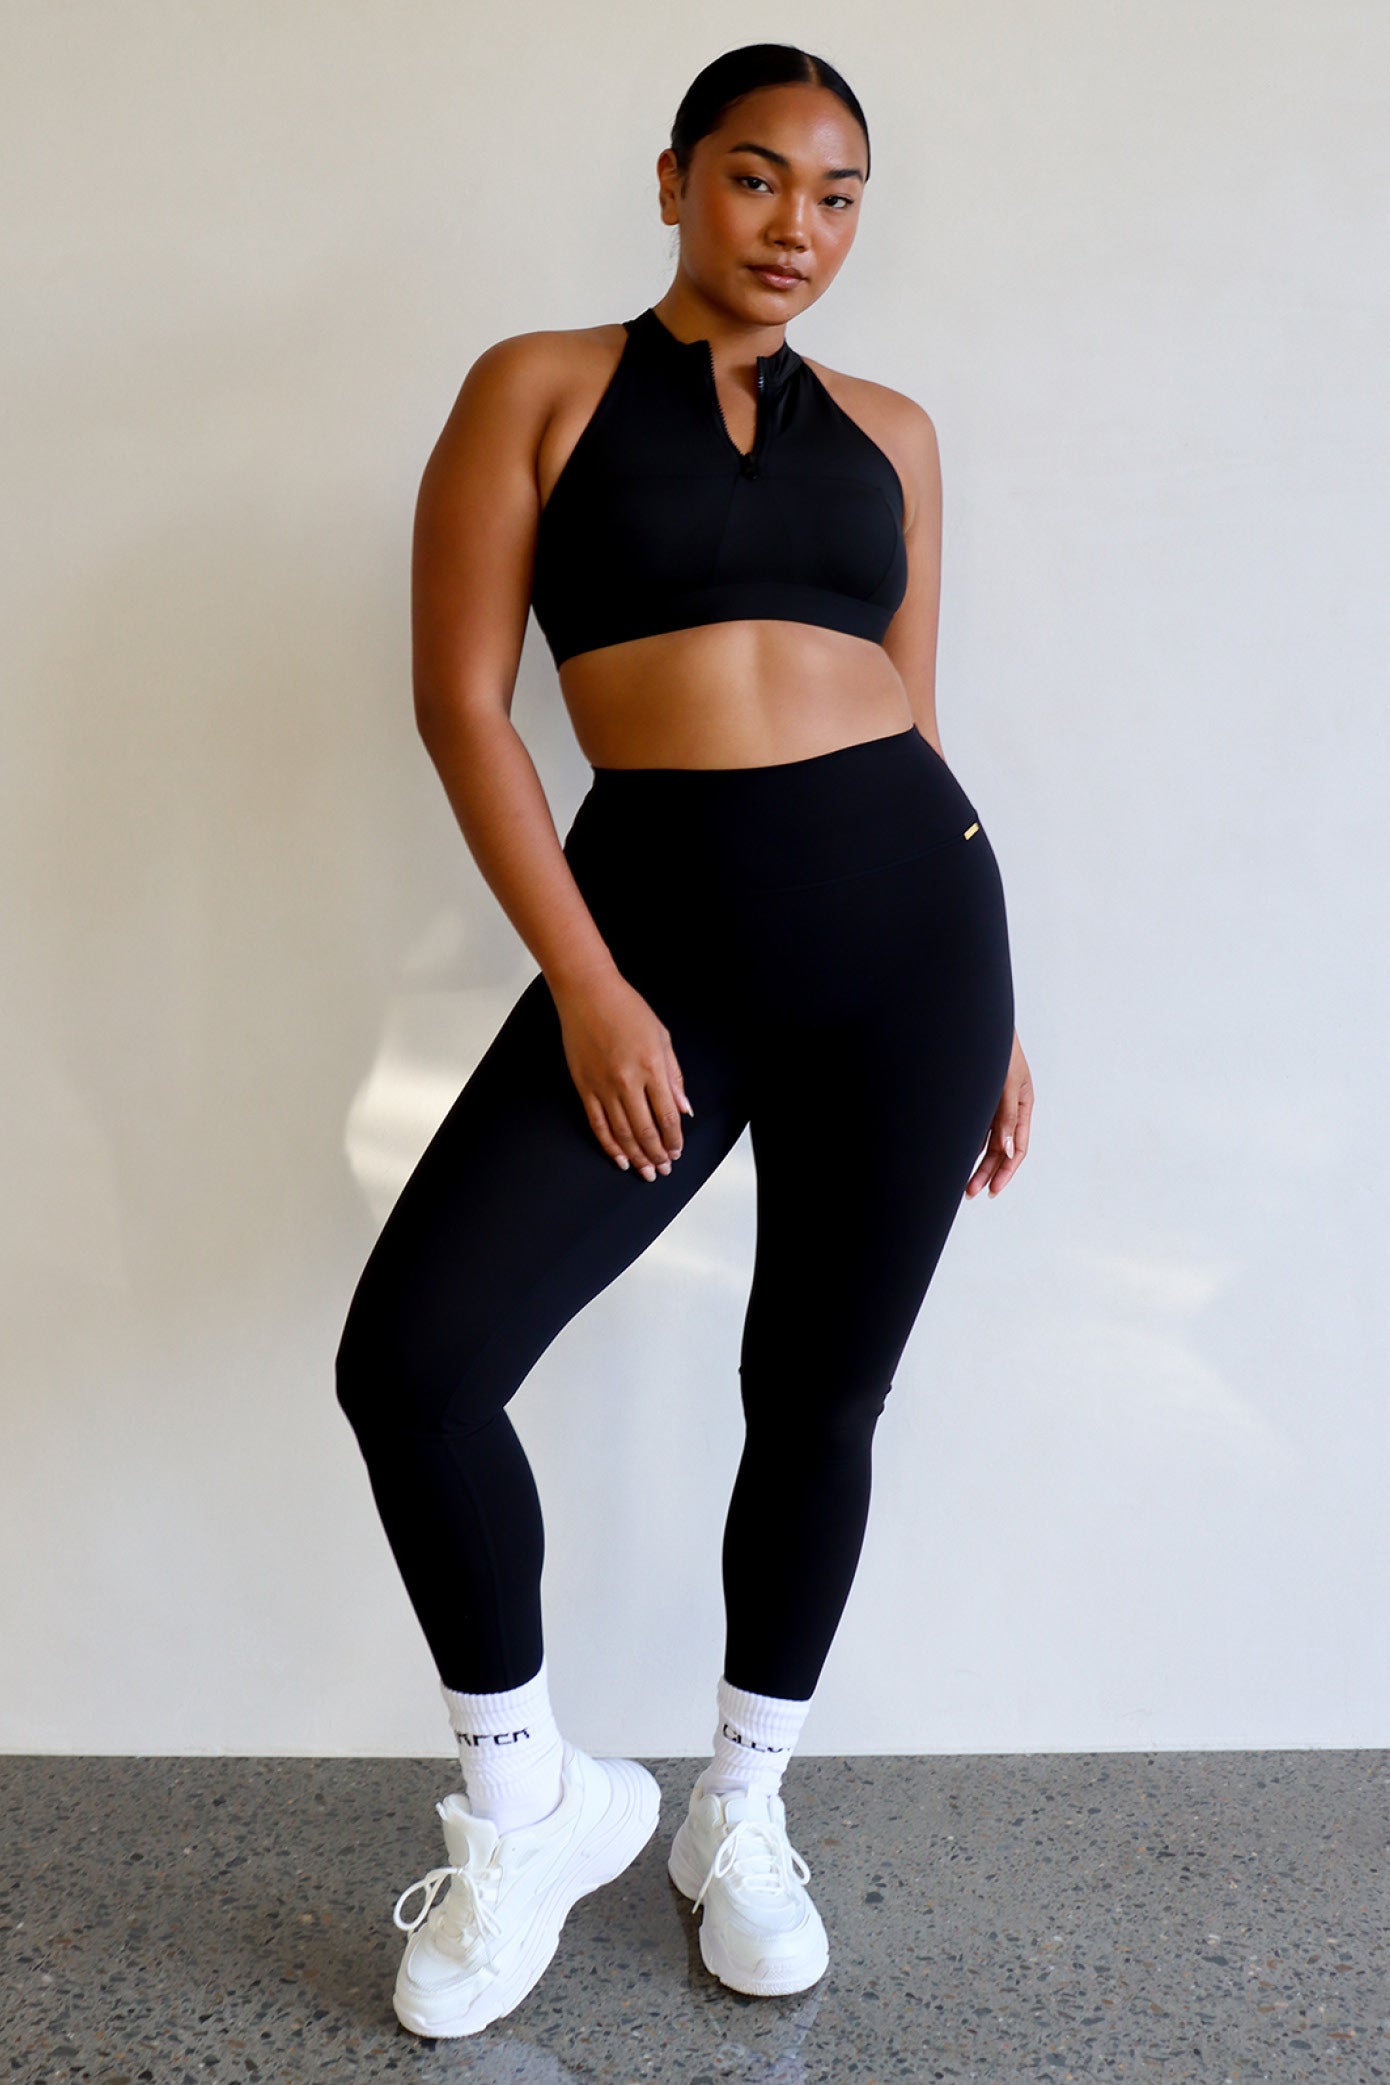 Cleo Harper Activewear - When in doubt - Classic Black #CleoCombo it is. We  love this look! Riley Bralet + Echo Legging in Black. Online now.